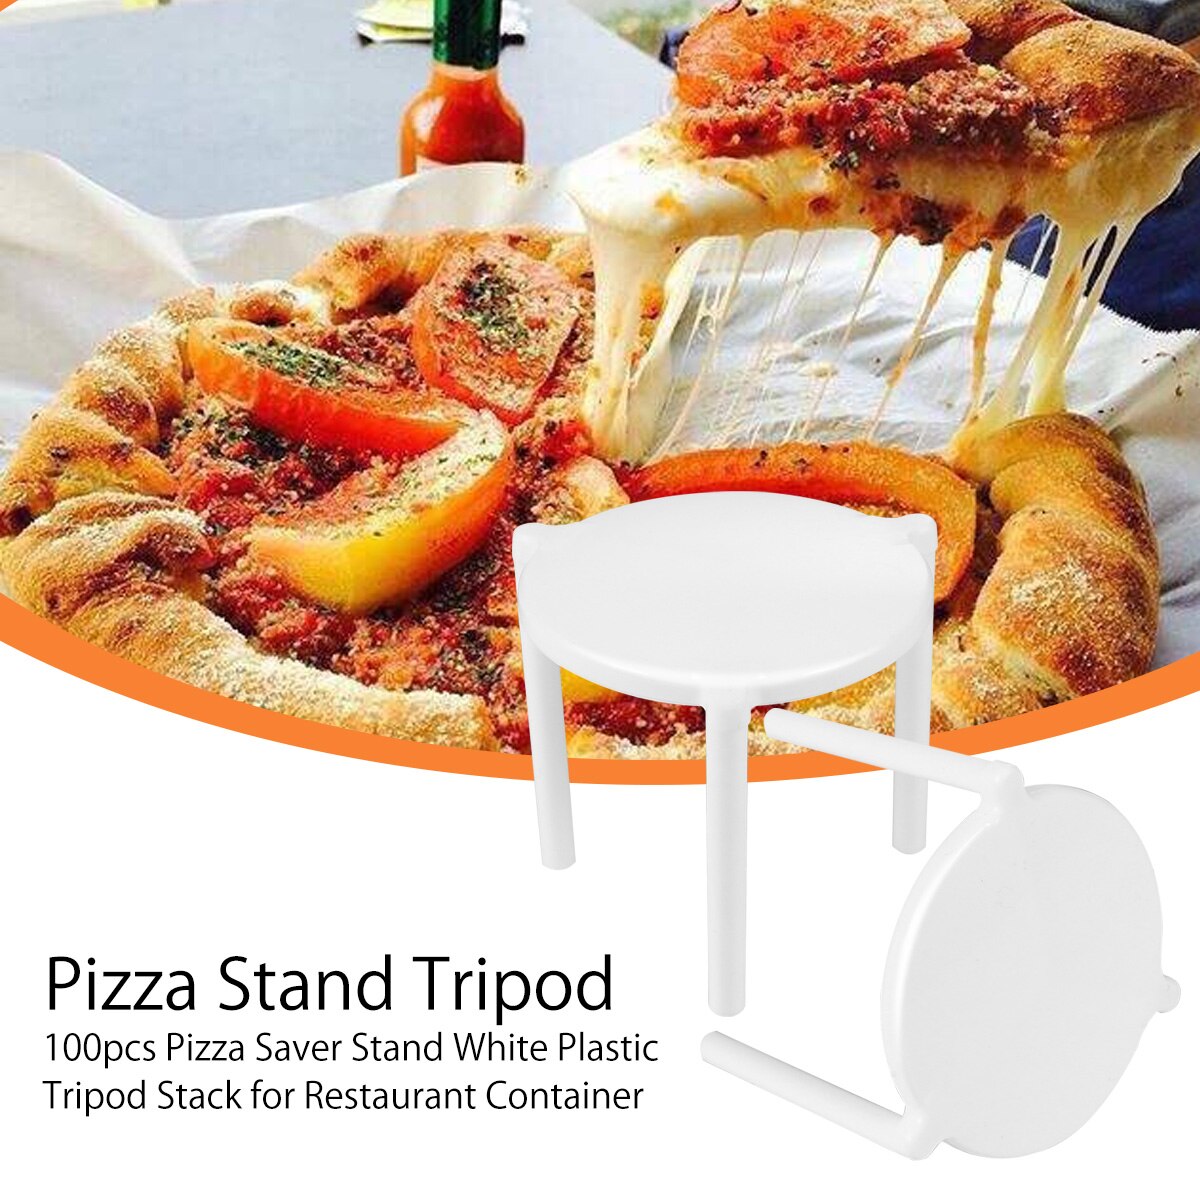 100 stk pizza saver stand hvid plast stativ stak til restaurant container pizza stativ stativ anti-vedhæftning støtte ramme